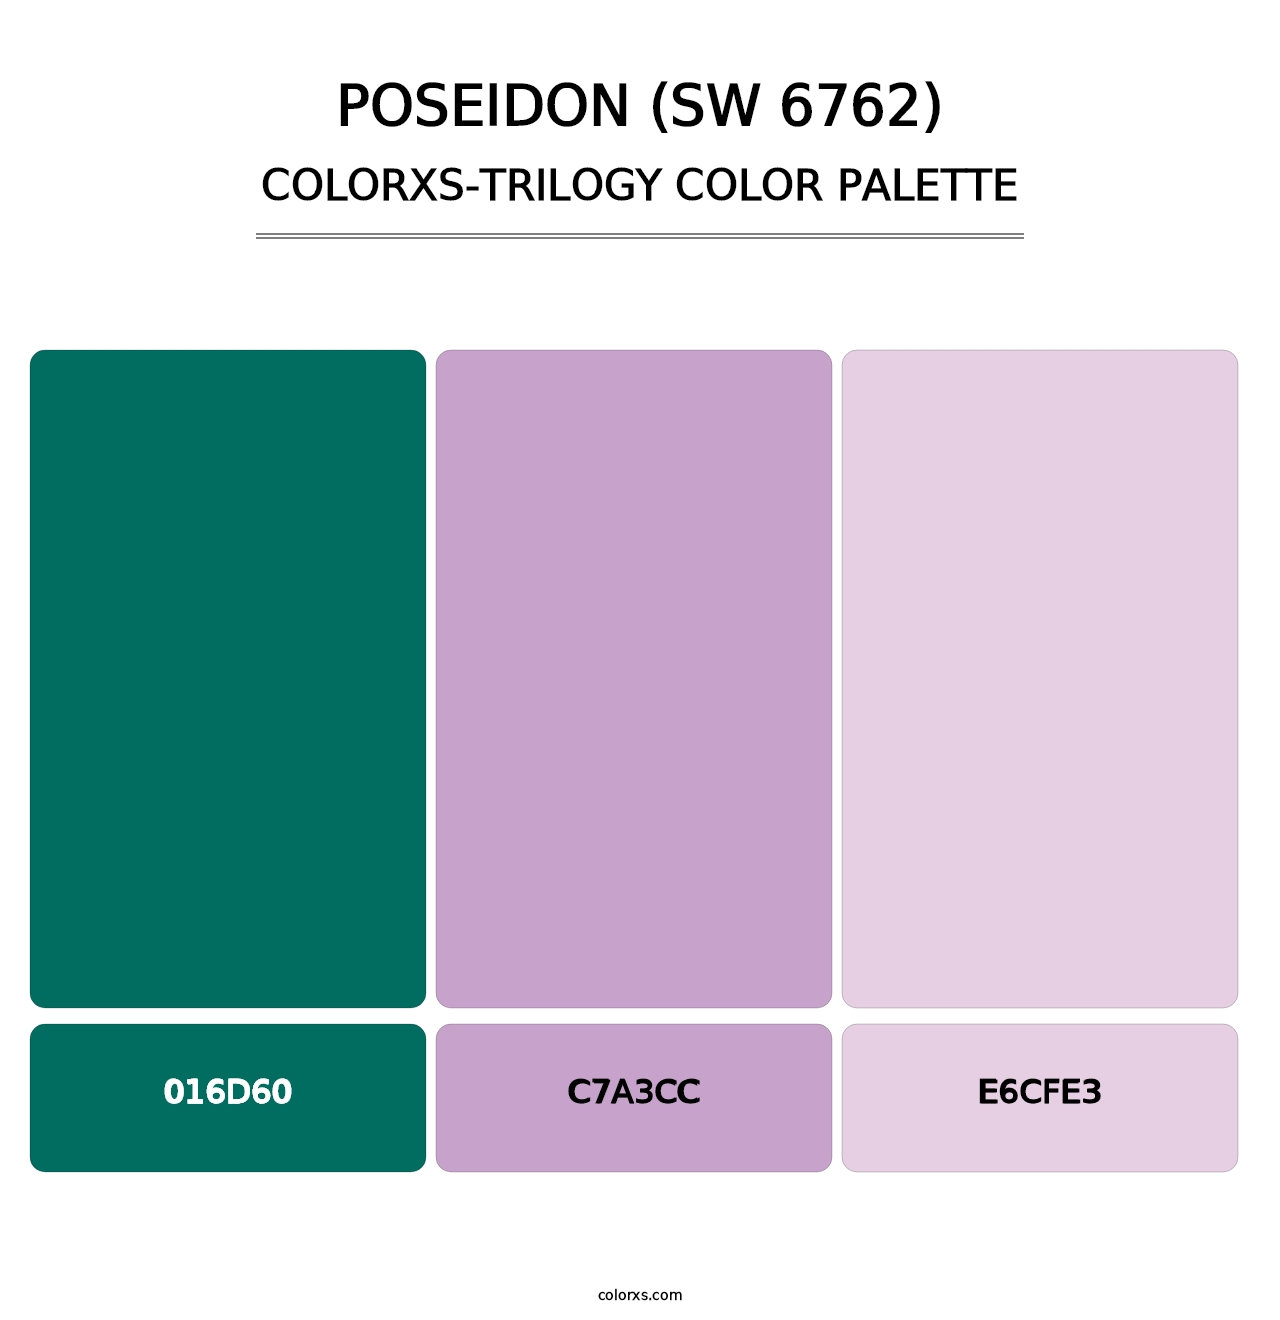 Poseidon (SW 6762) - Colorxs Trilogy Palette